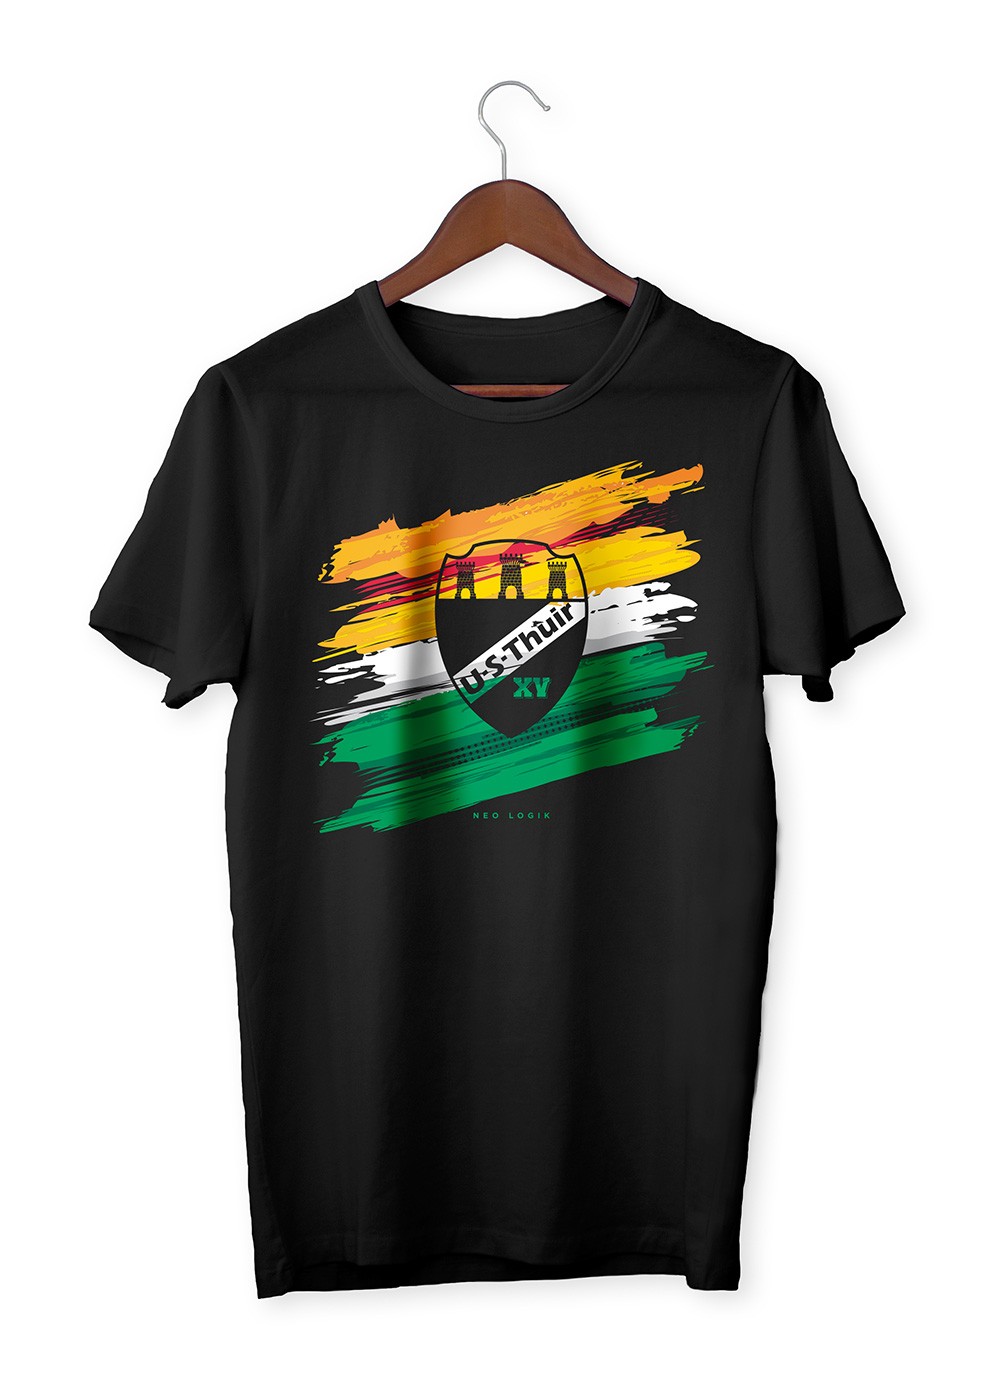 T-shirt homme US Thuir - Blaz 2021